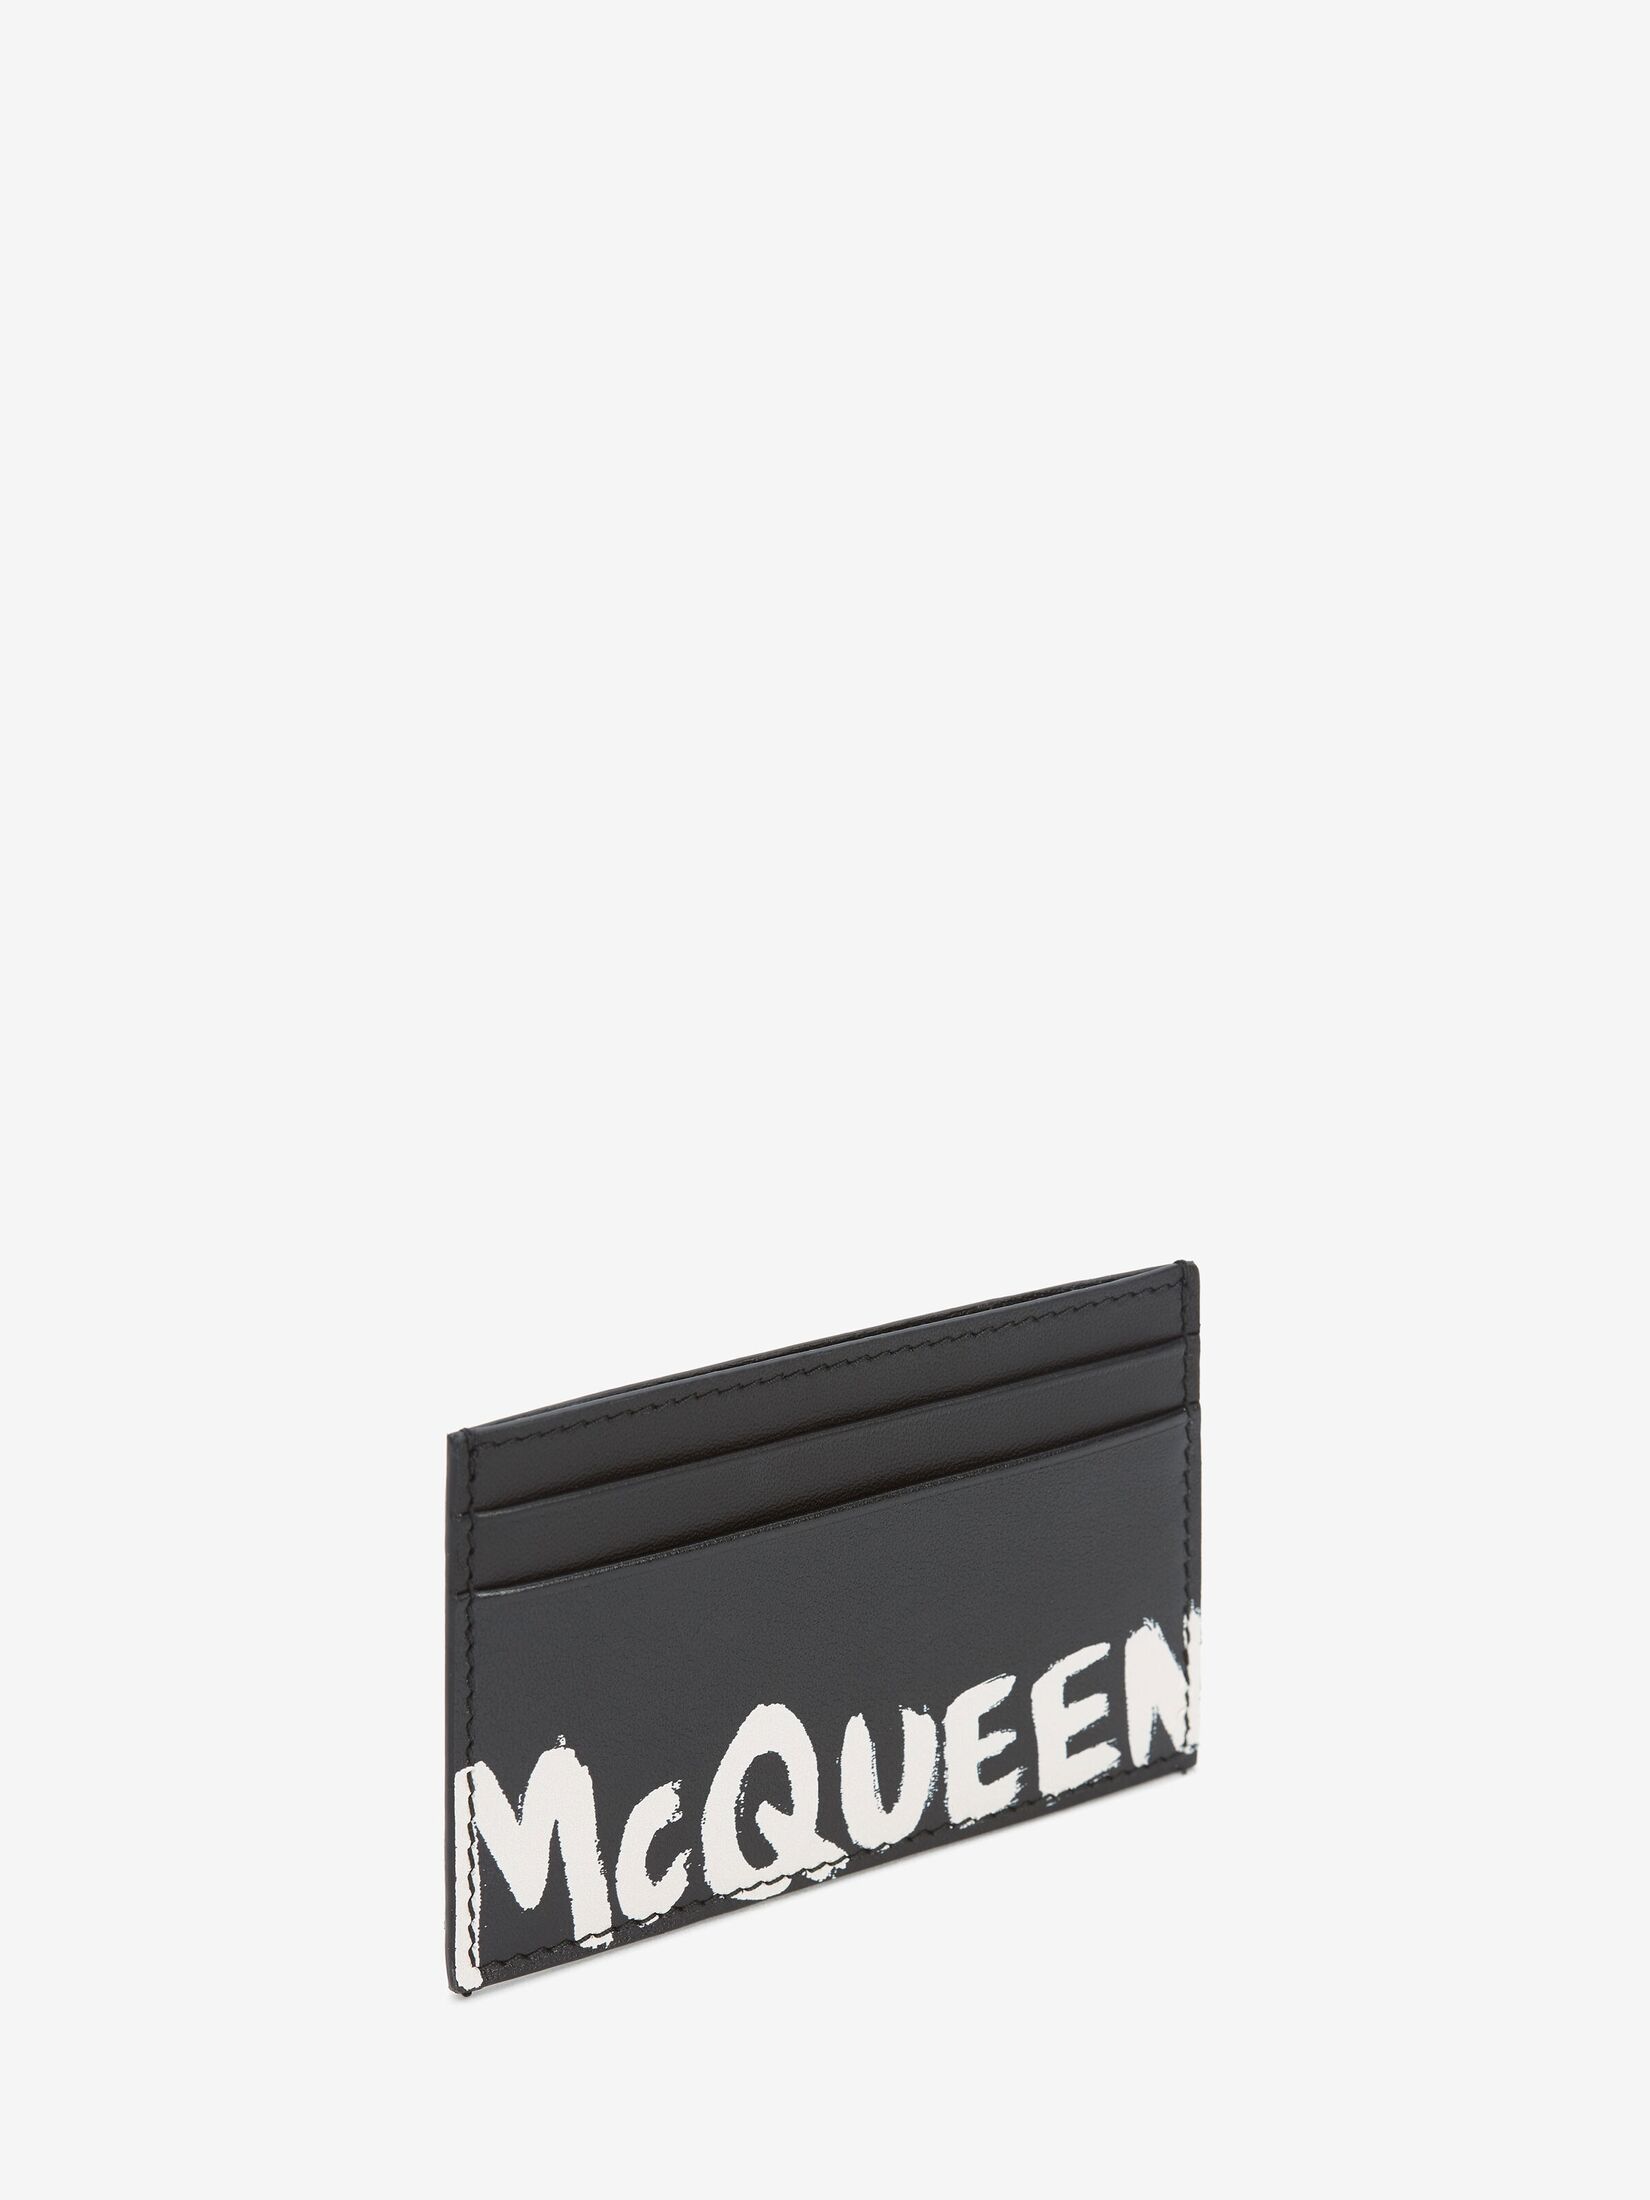 Porte-cartes McQueen Graffiti